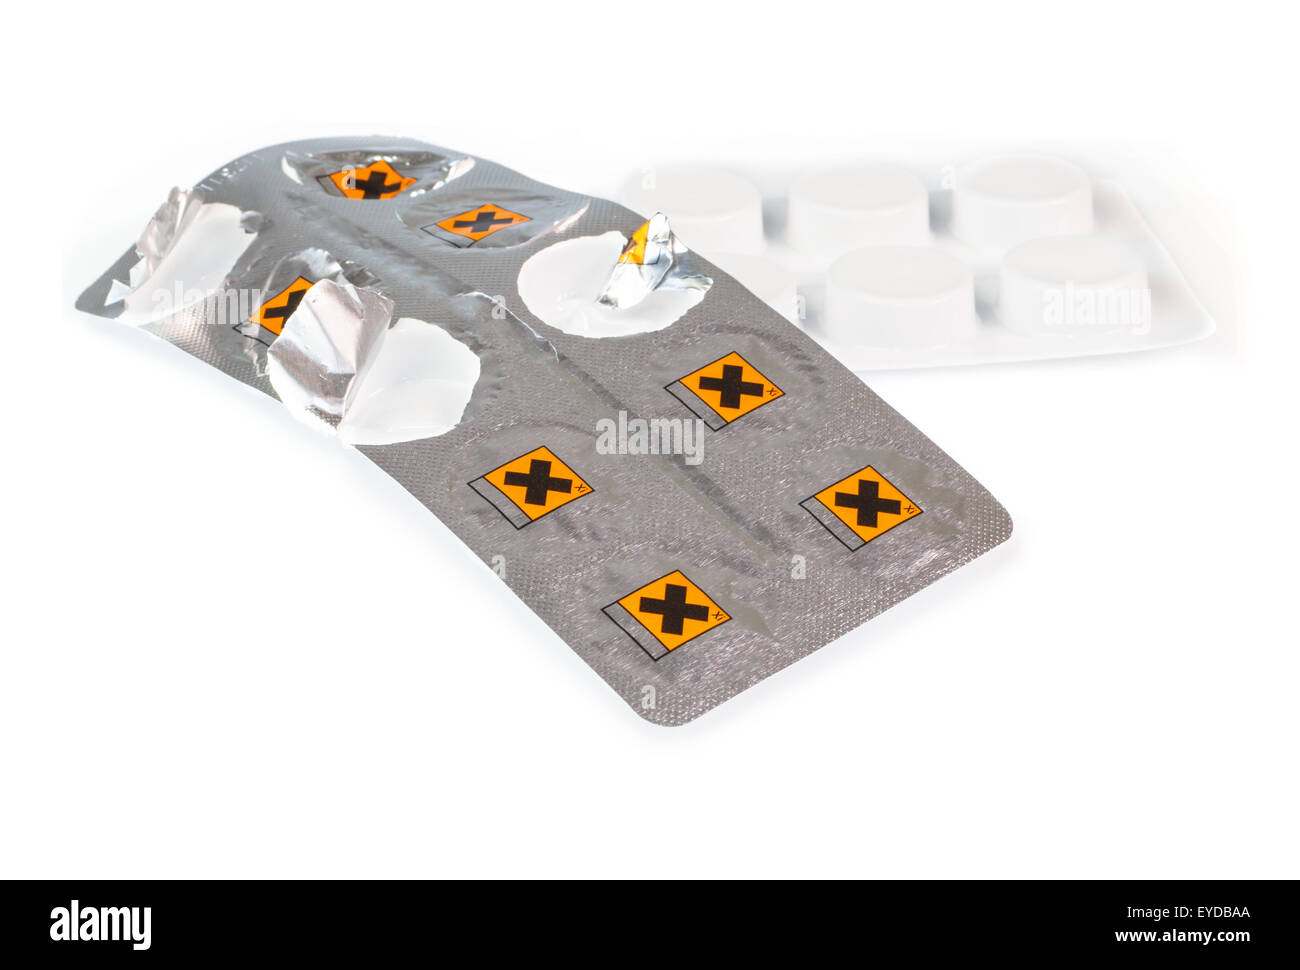 Tabletas peligrosos en una tira de papel de aluminio Foto de stock